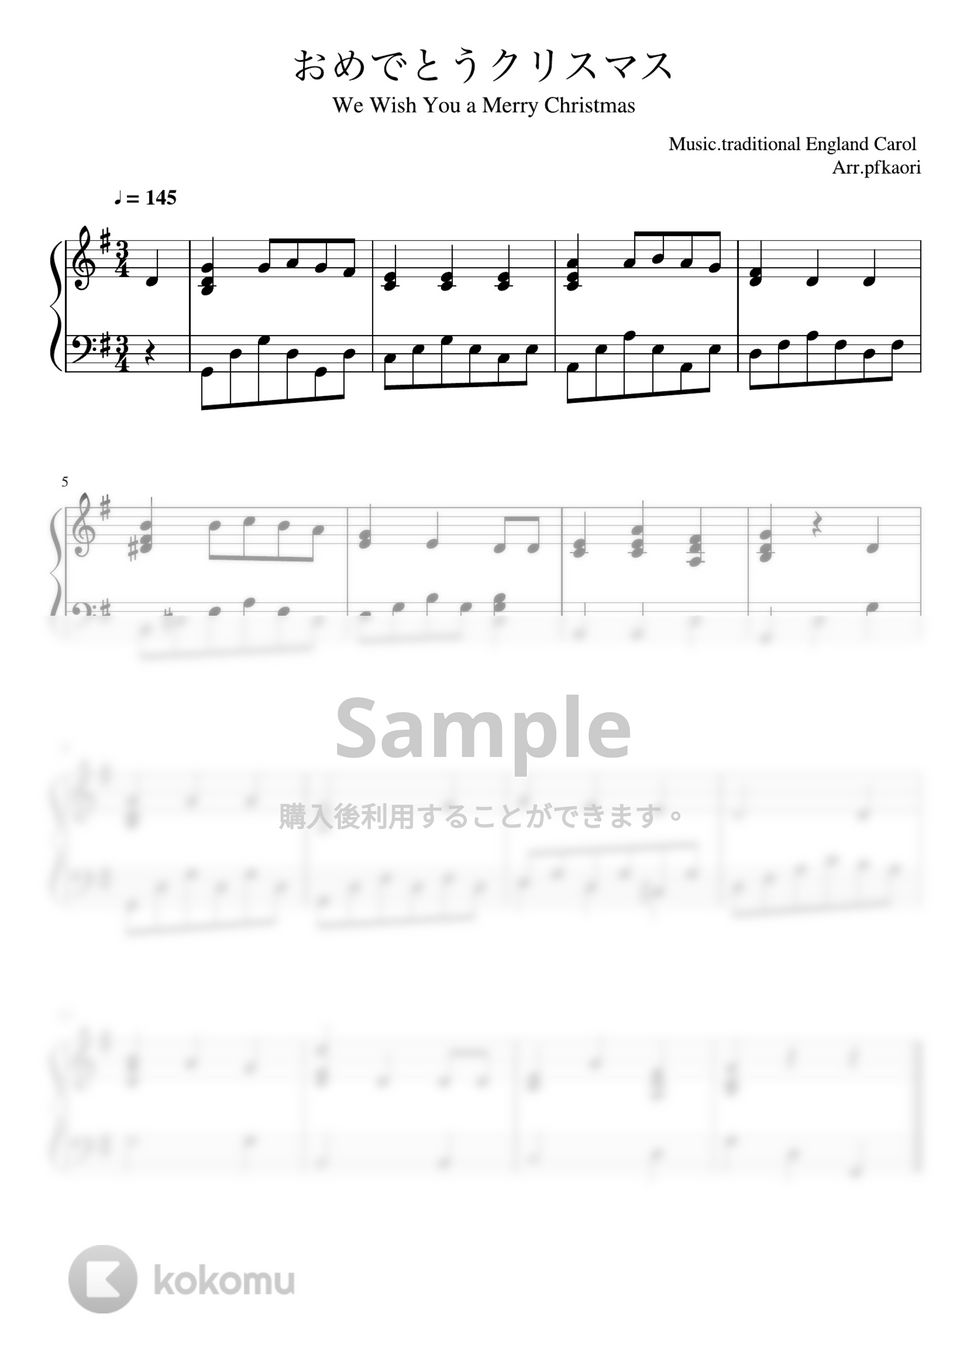 おめでとうクリスマス (Gdur/ピアノソロ中級) by pfkaori